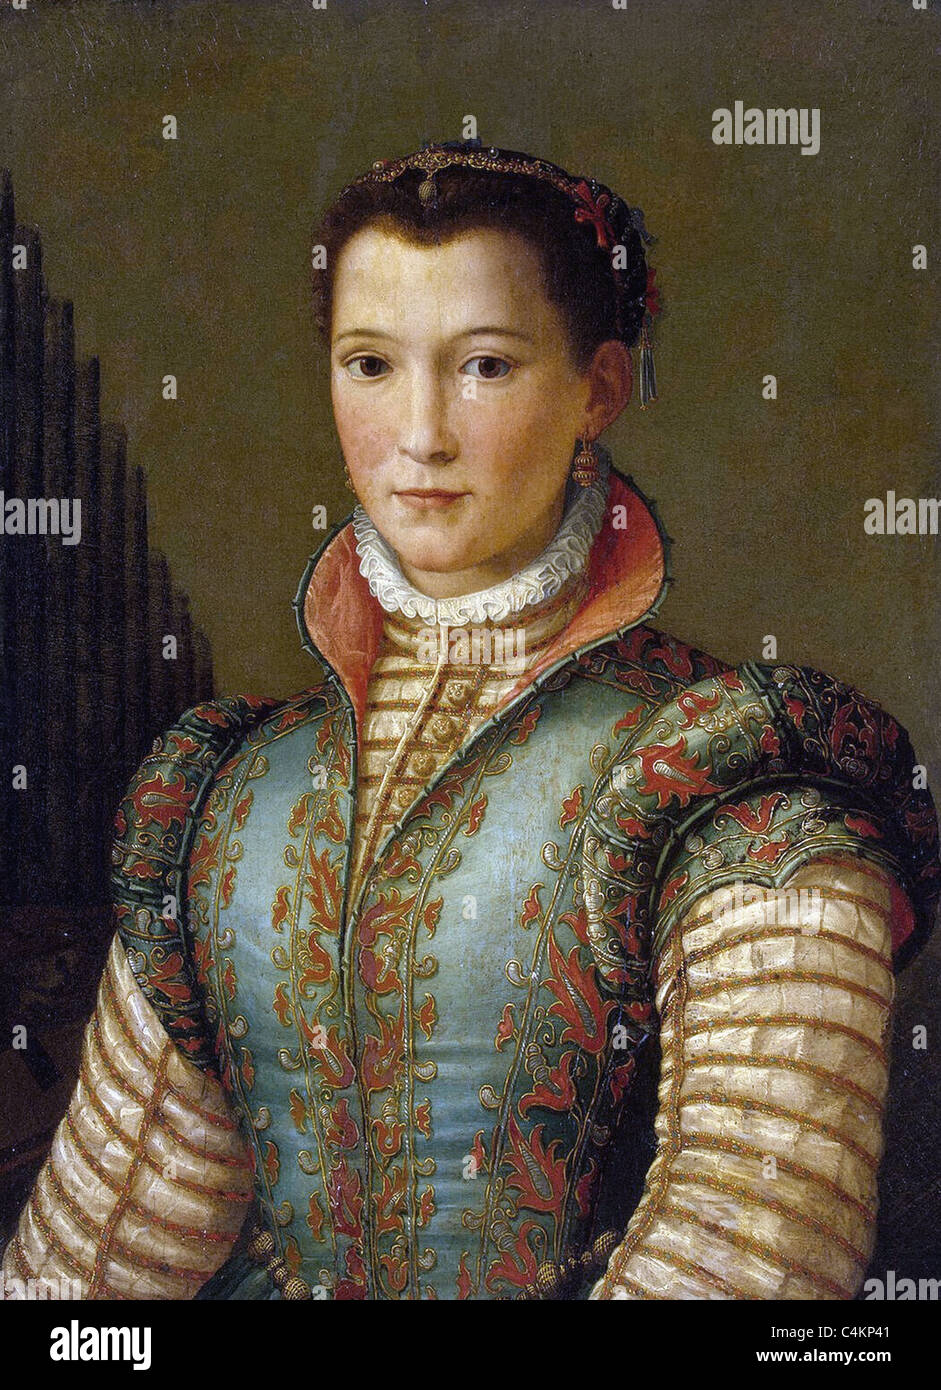 Alessandro Allori Eleonora da Toledo 1560 Musée de l'Ermitage, Saint-Pétersbourg, Russie Banque D'Images